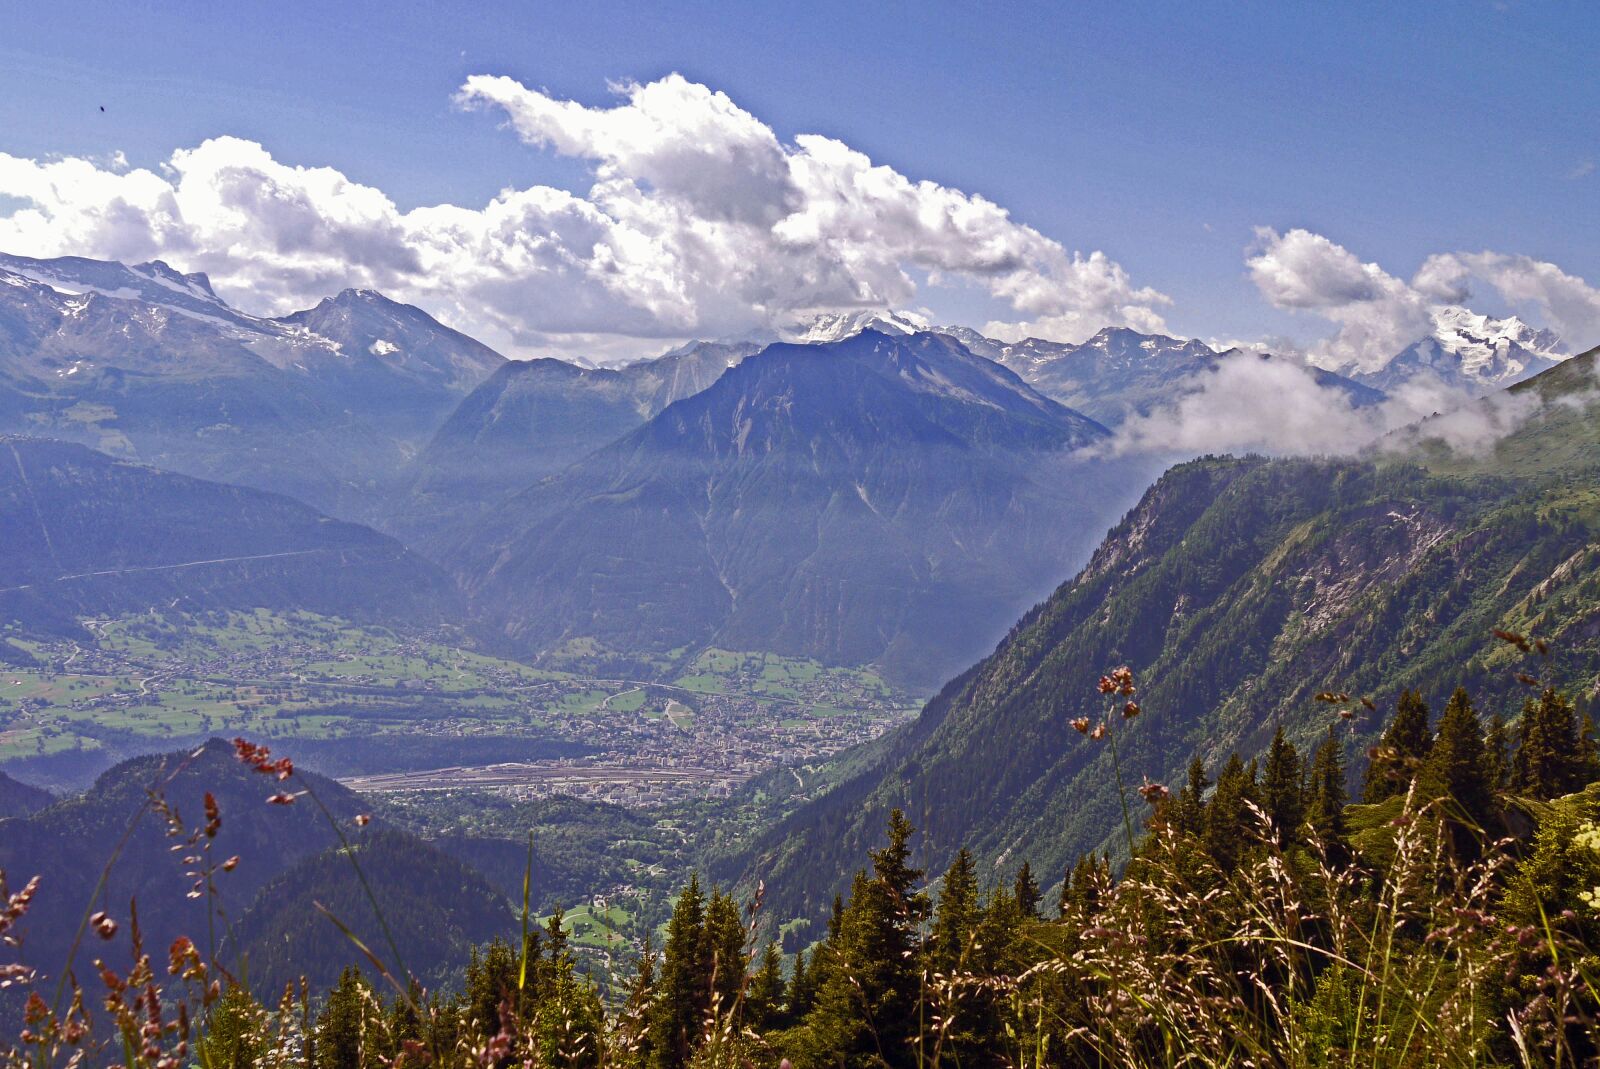 Panasonic Lumix DMC-G1 sample photo. Switzerland, rhone valley, view photography